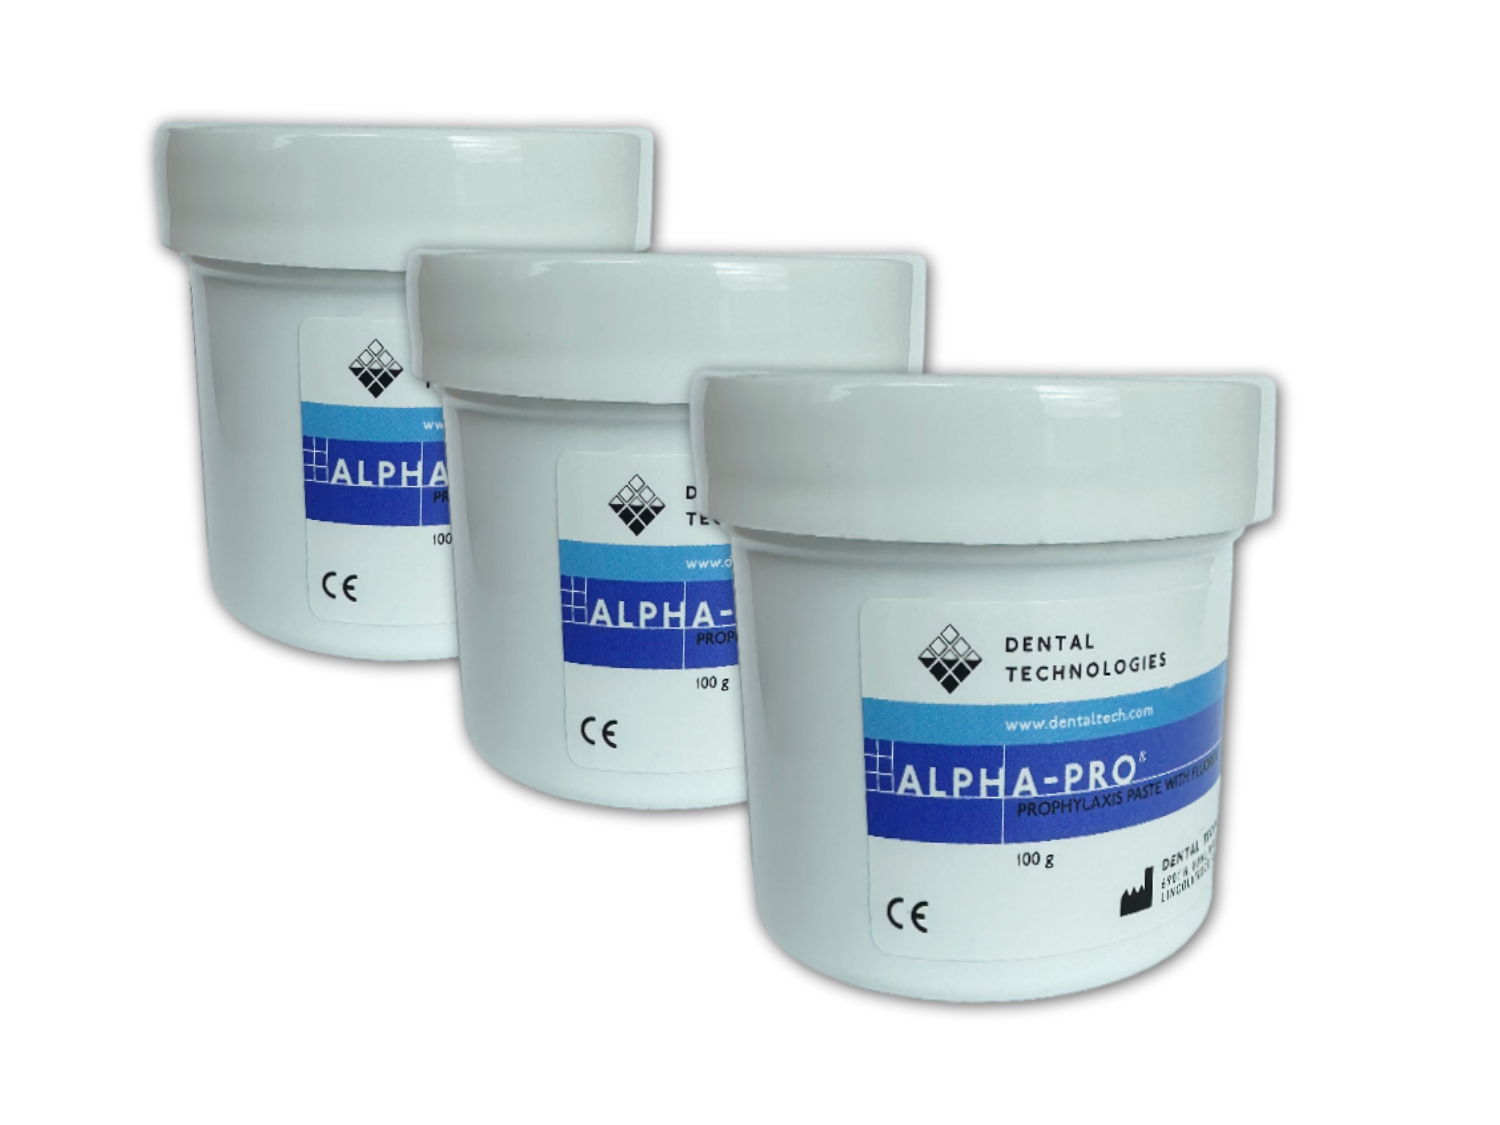 Alpha-Pro Prophylaxepaste Dental Technologies Polierpaste Minze